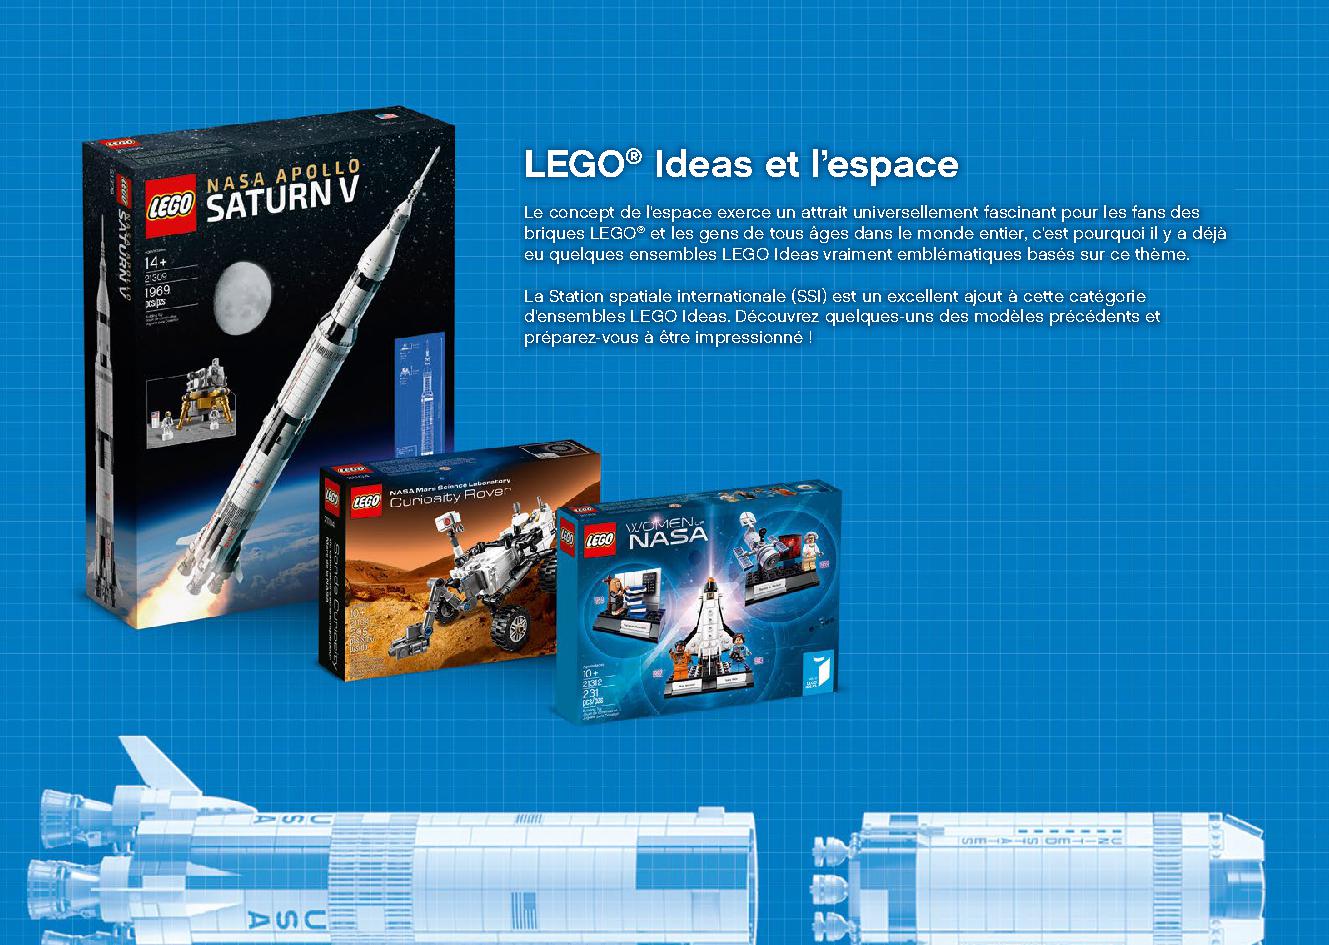 국제 우주 정거장 21321 레고 세트 제품정보 레고 조립설명서 20 page